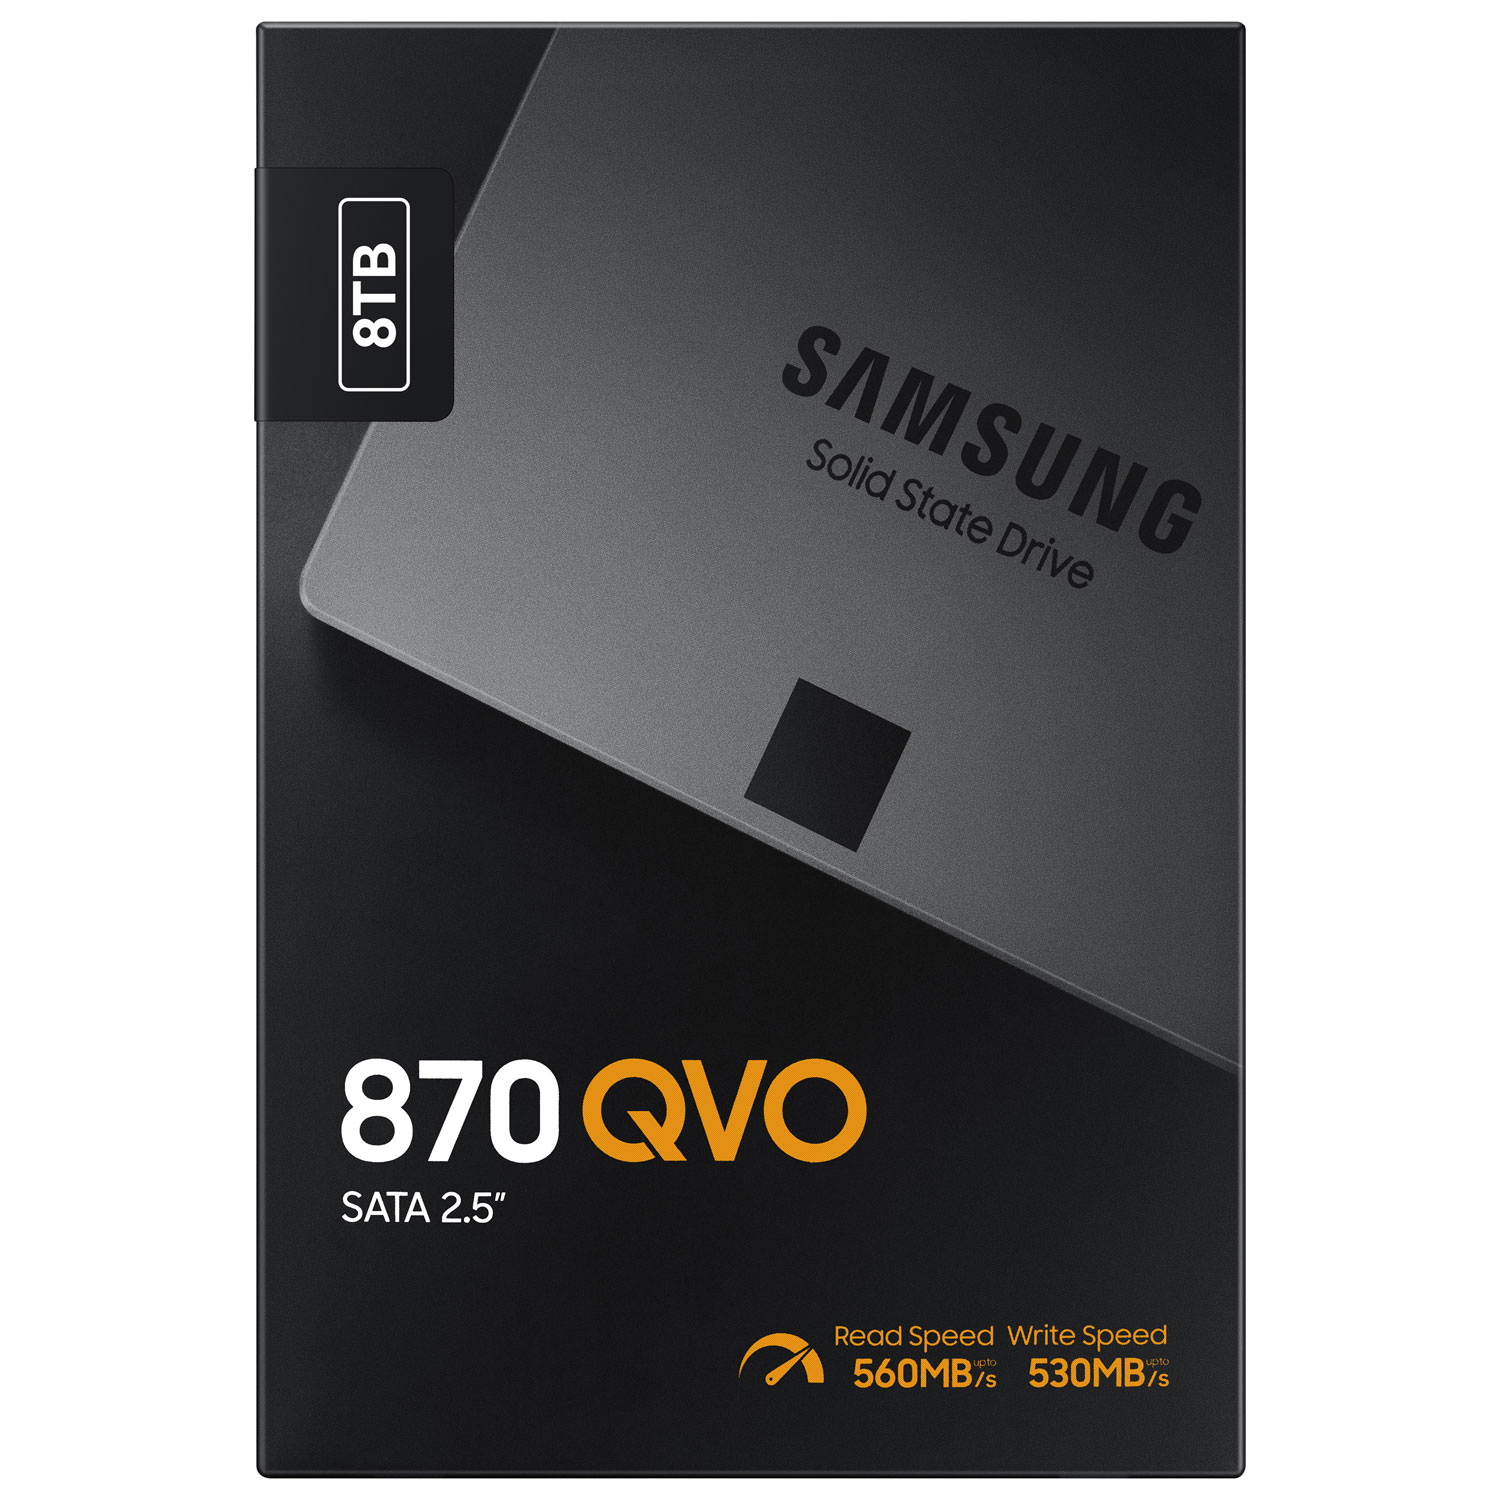 Samsung 870 QVO 8TB SATA III Internal Solid State Drive (MZ-77Q8T0B/AM)